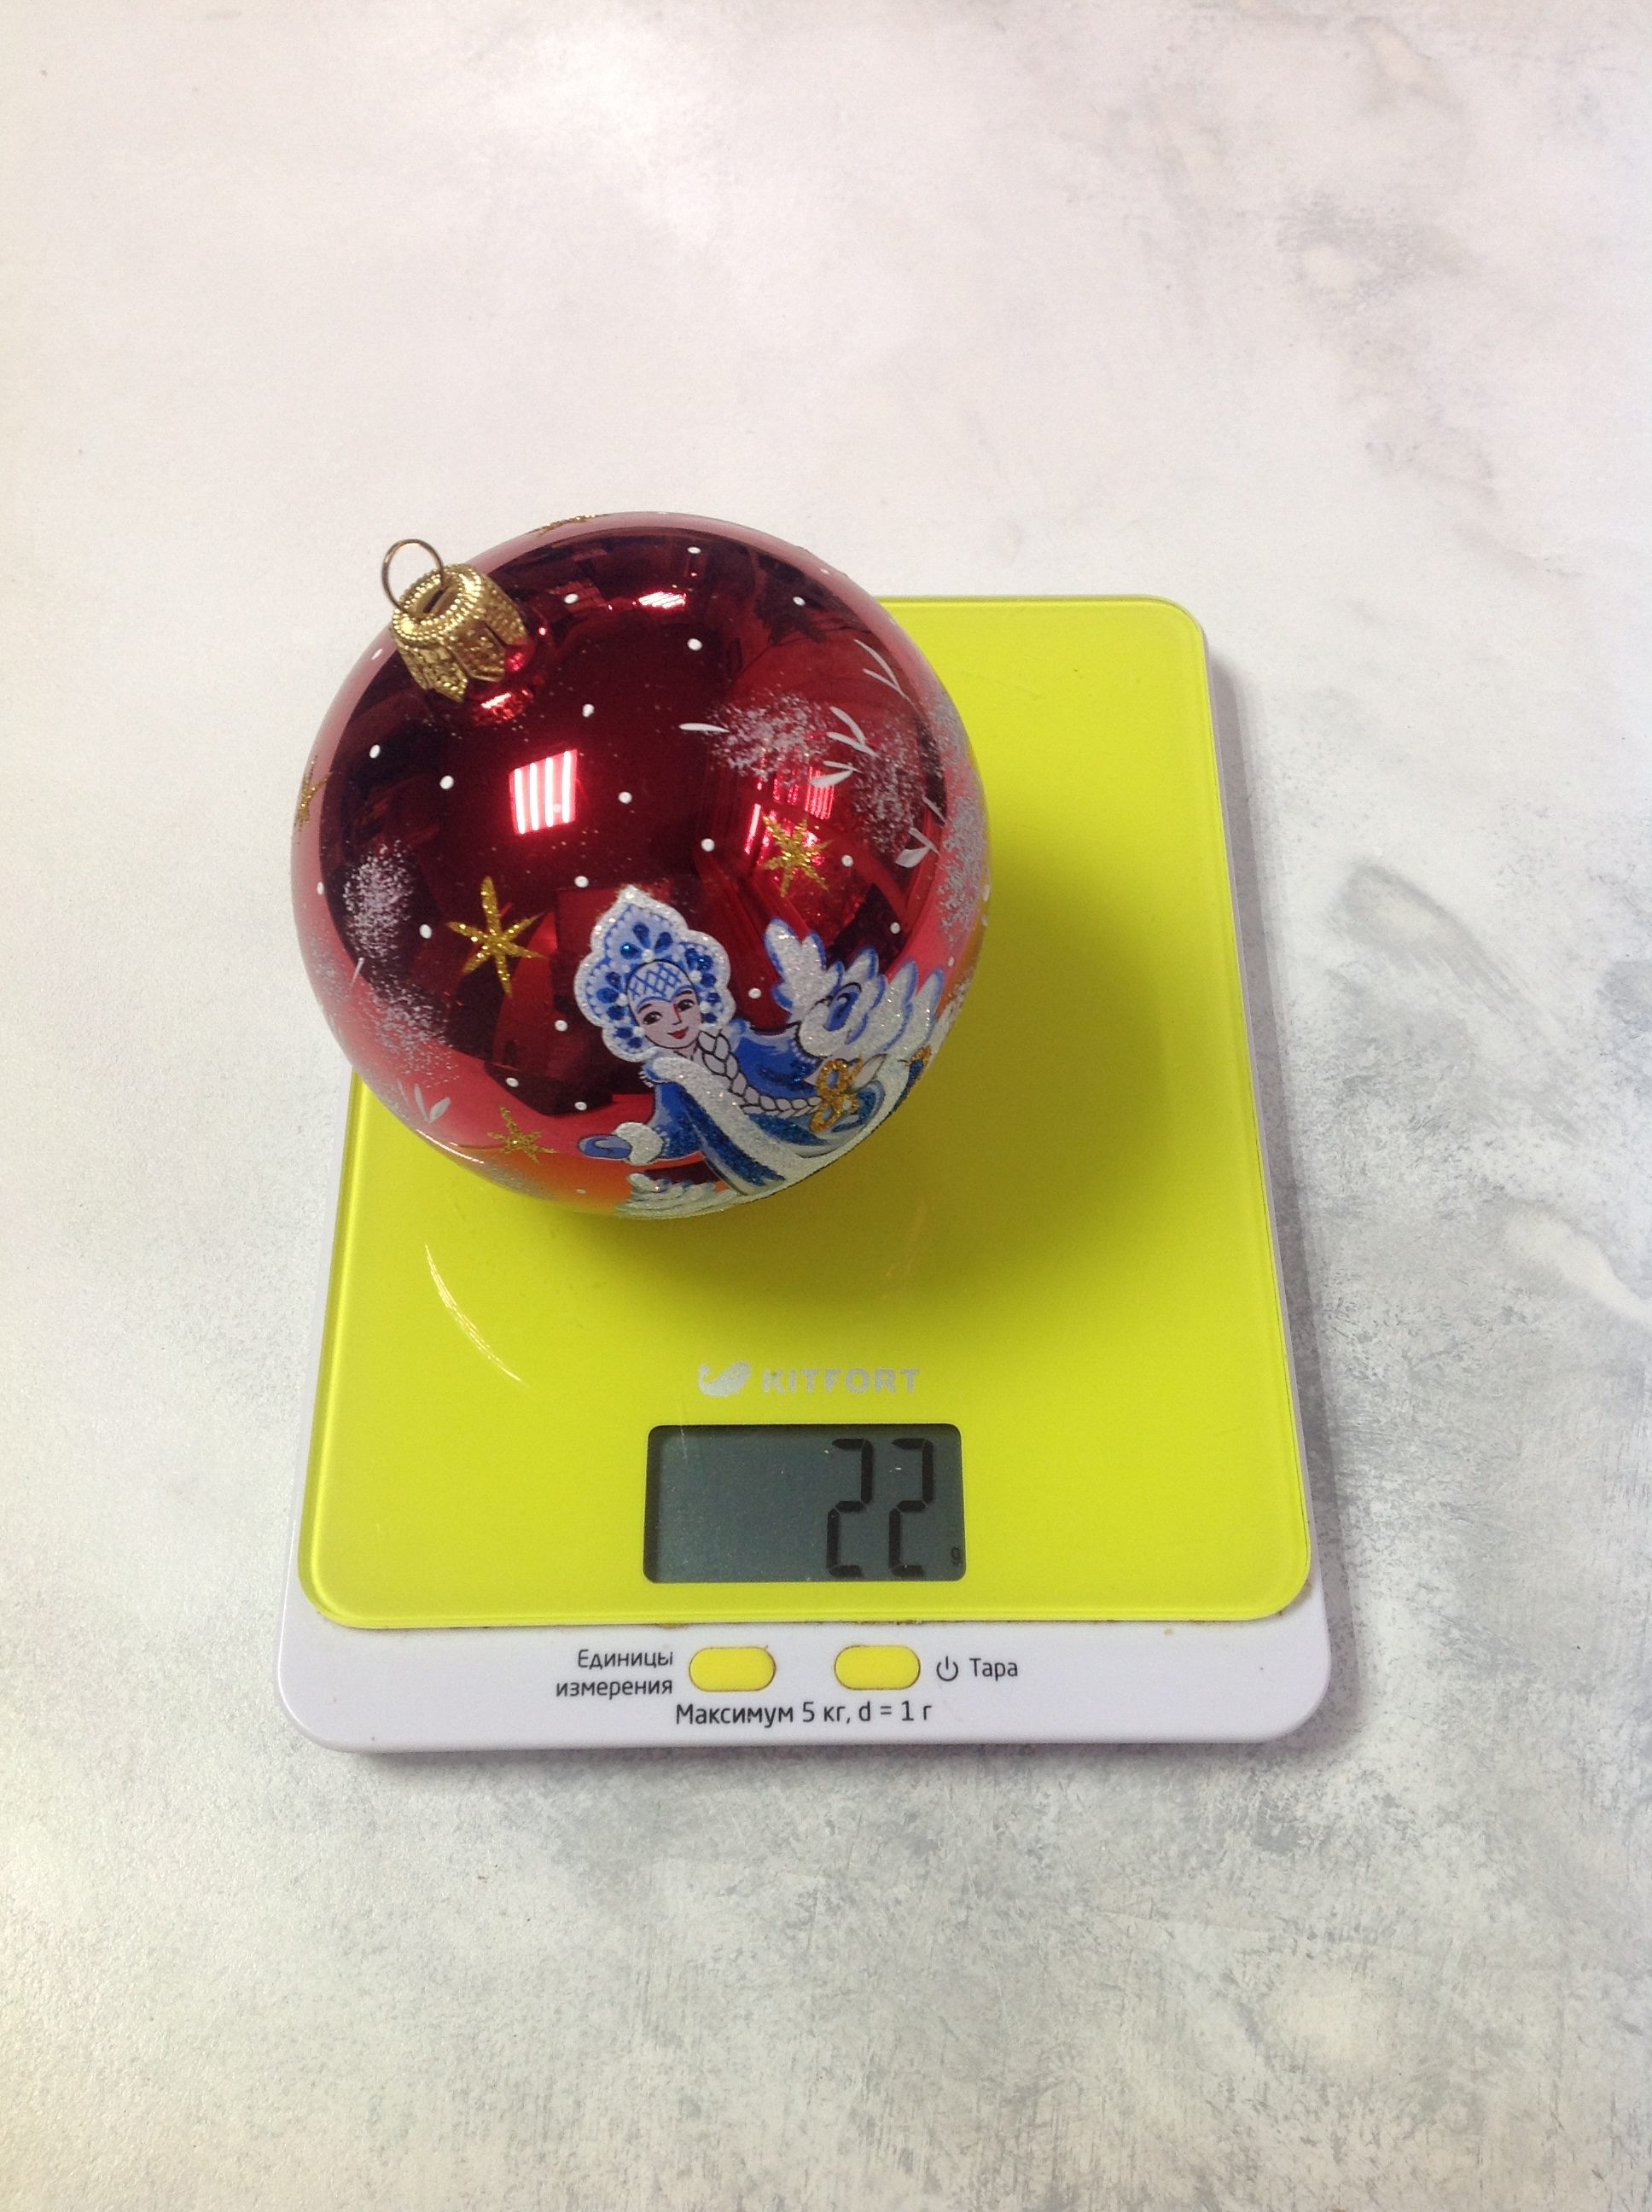 一个大塑料圣诞树球的重量